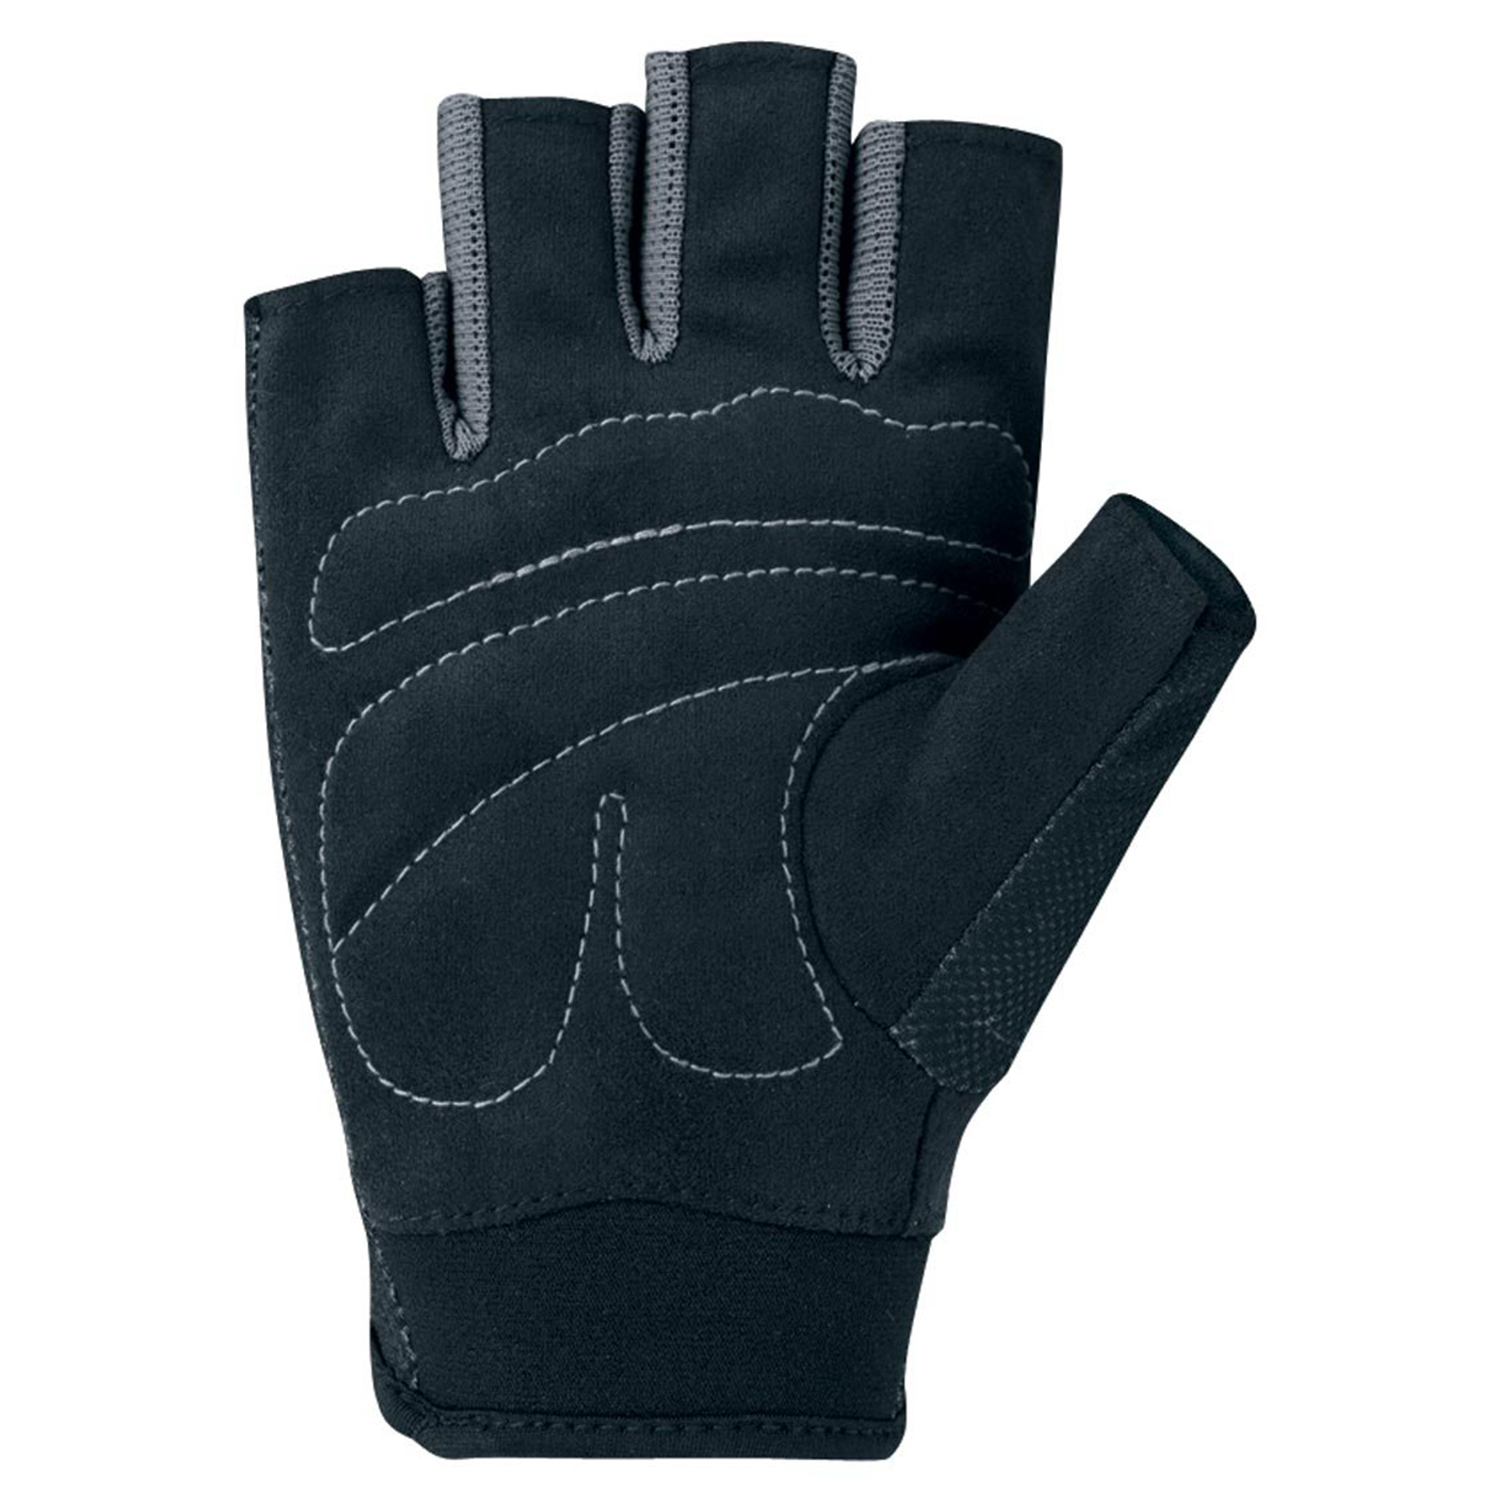 Тренировочные перчатки Nike Wmn Fundamental Fitness Gloves